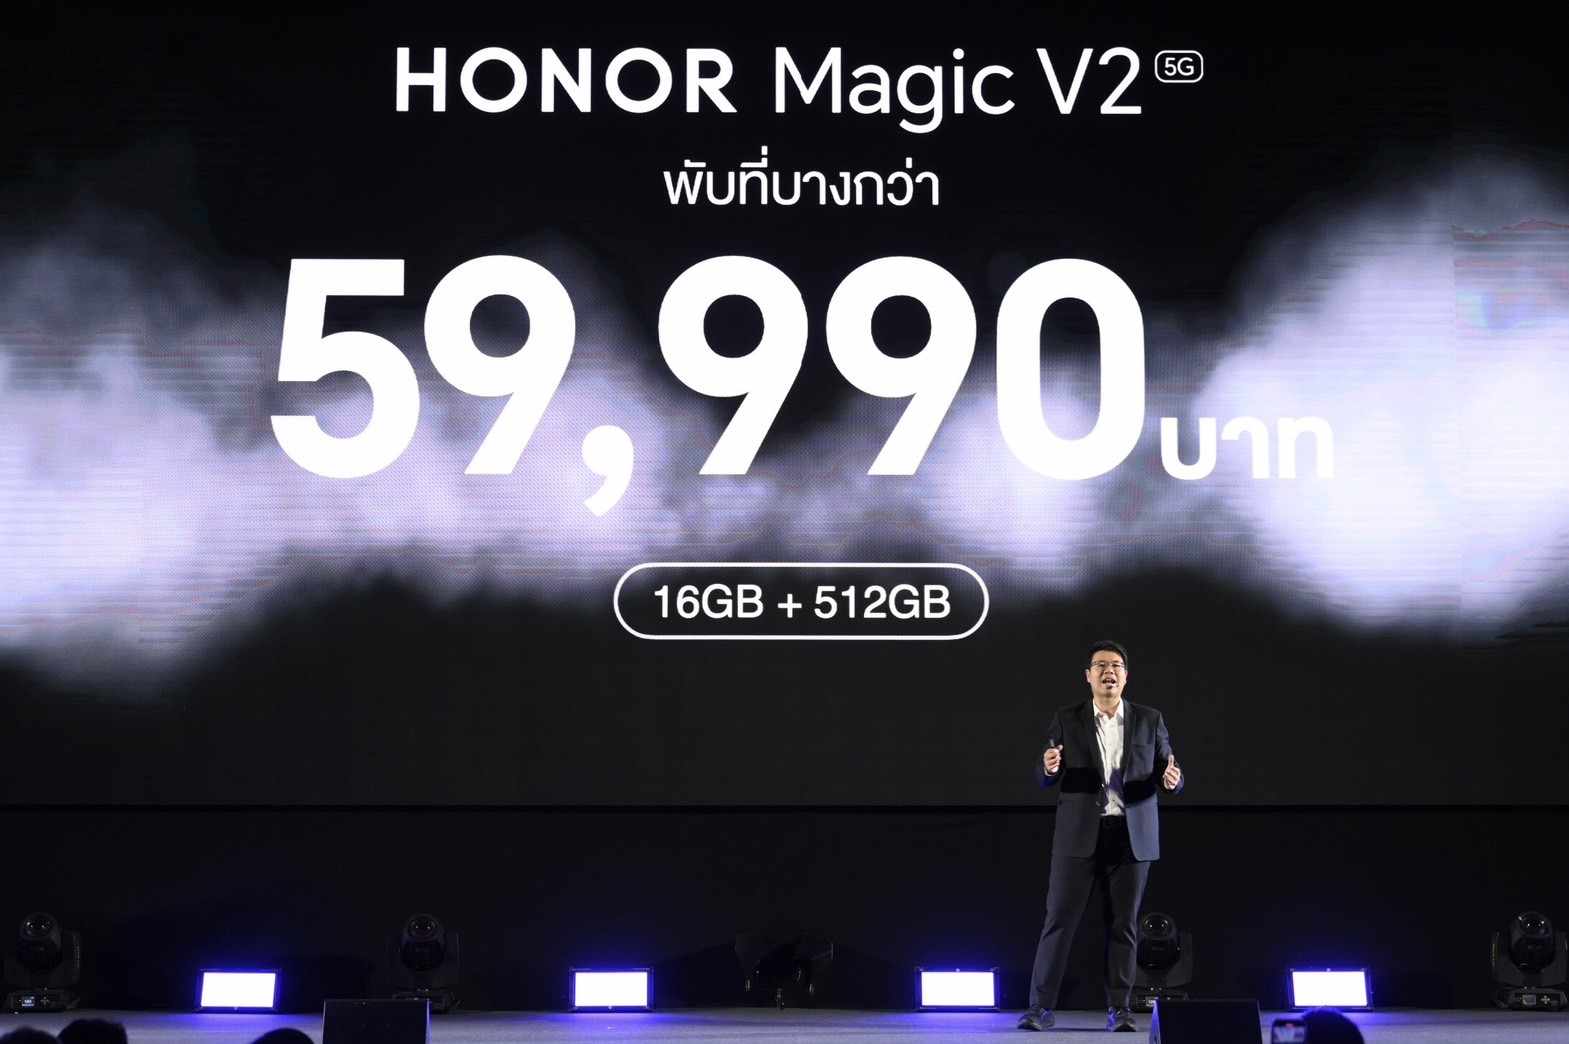 420844959 1114773056618000 4970153594934331982 n 1 | honor | HONOR เปิดตัว “HONOR Magic V2” บางที่สุดในตลาดประเทศไทย ชูนวัตกรรมการใช้งานระดับพรีเมียมจัดเต็มในราคา 59,990 บาท เริ่ม Pre-Order 8-12 ก.พ.นี้